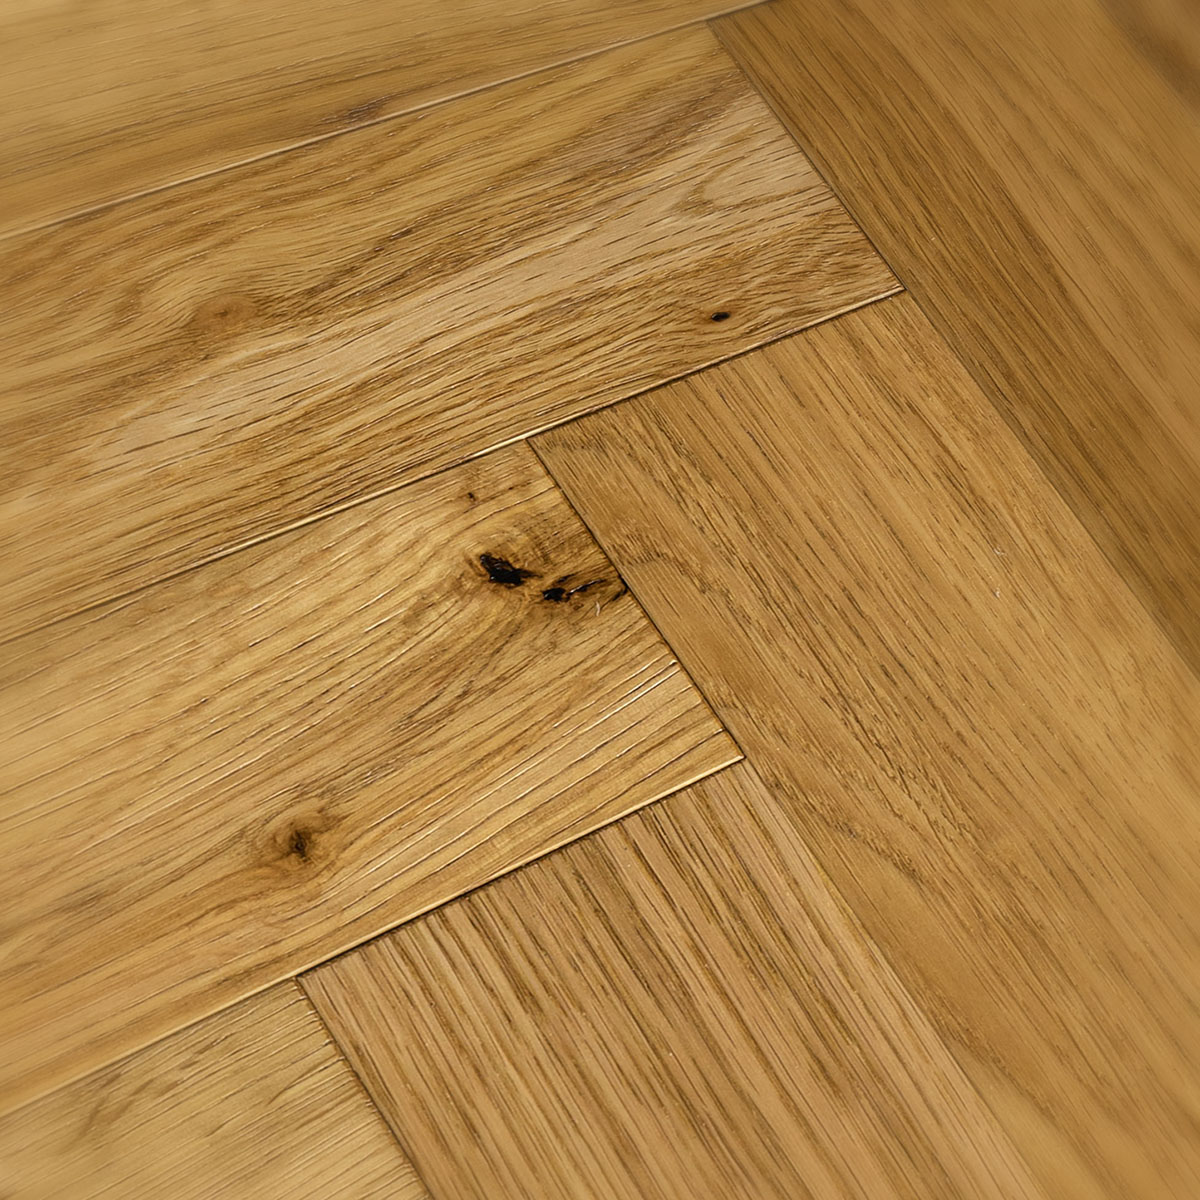 Adderley Place - Rustic Oak Herringbone Floor 280mm x 70mm